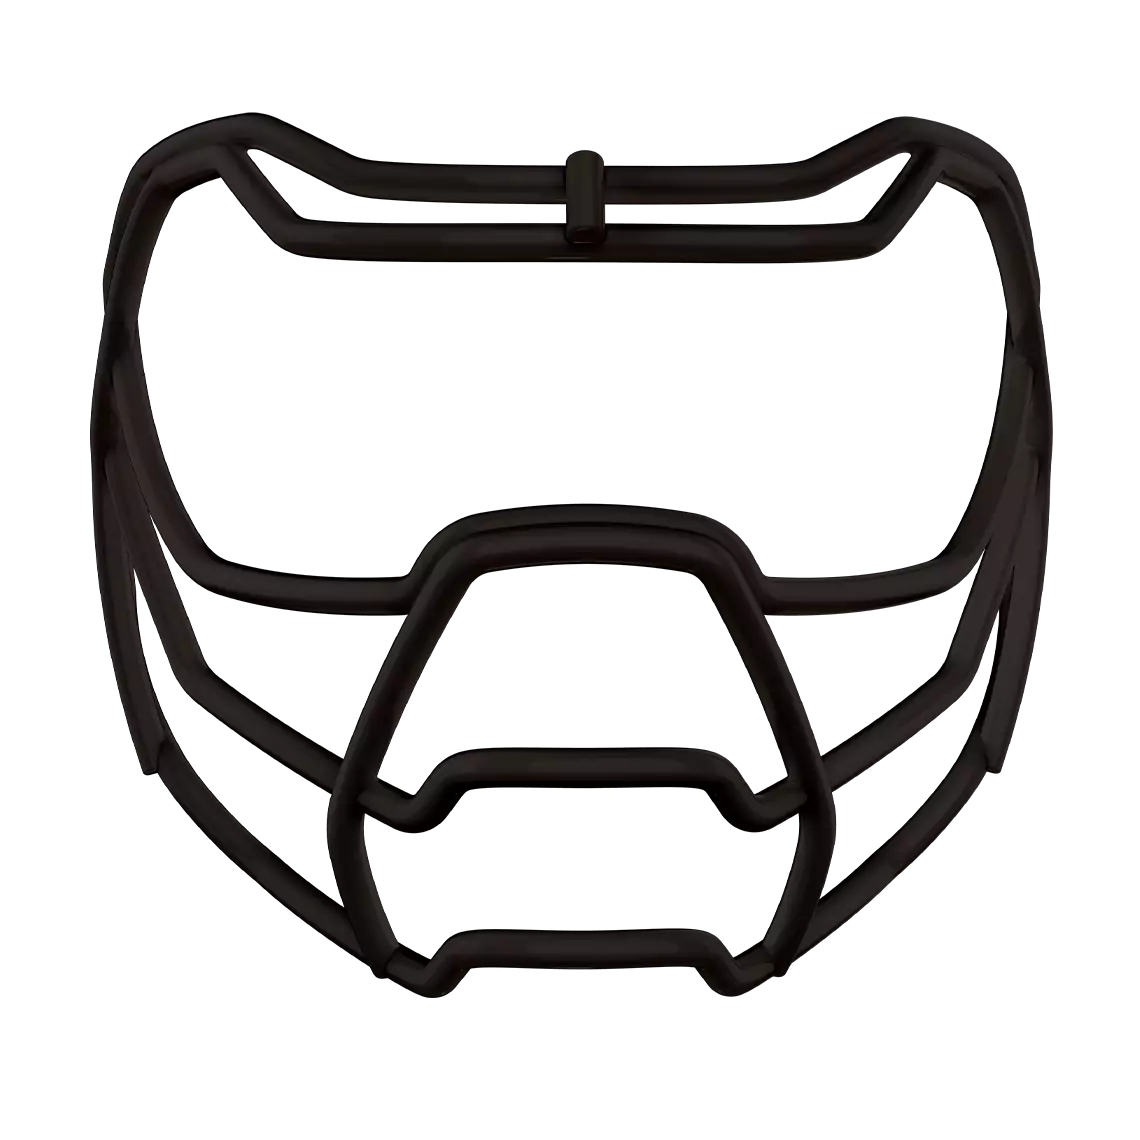 Black Prowl face mask for football helmet.